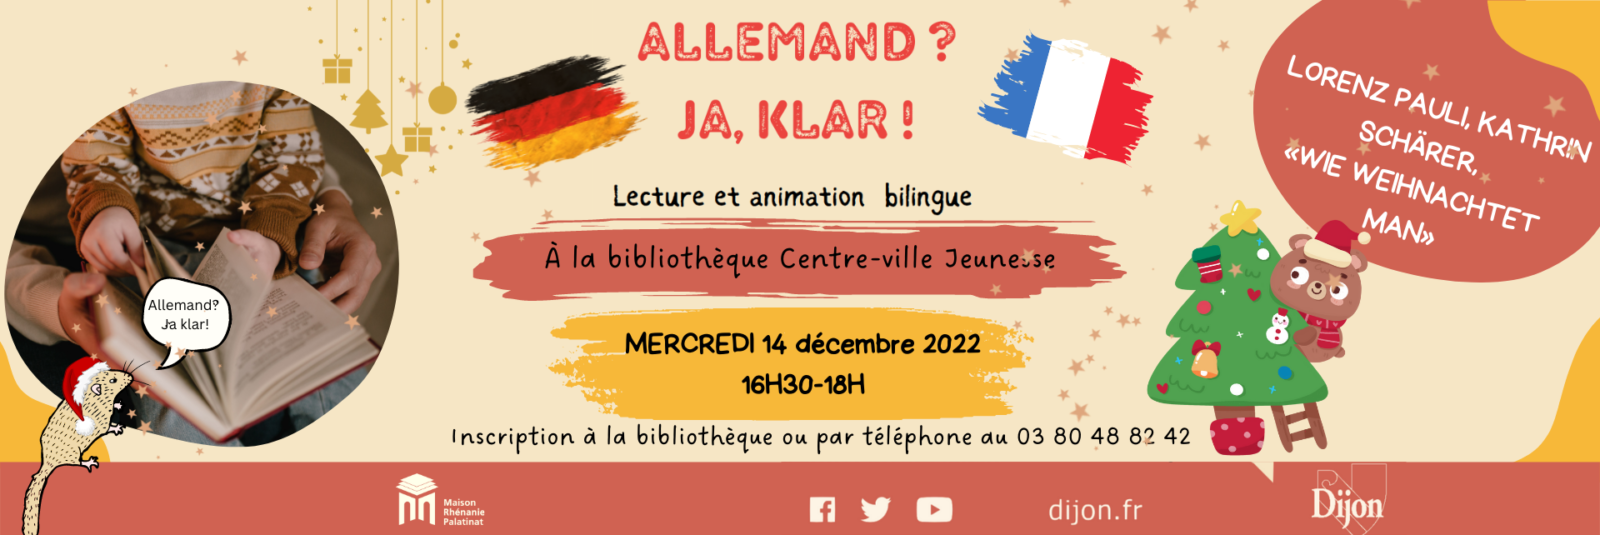 Mercredi 14 décembre 2022 de 16h30 à 18h  LECTURE ET ANIMATION BILINGUE : Ja, Klar! (bibliothèque du centre-ville jeunesse)